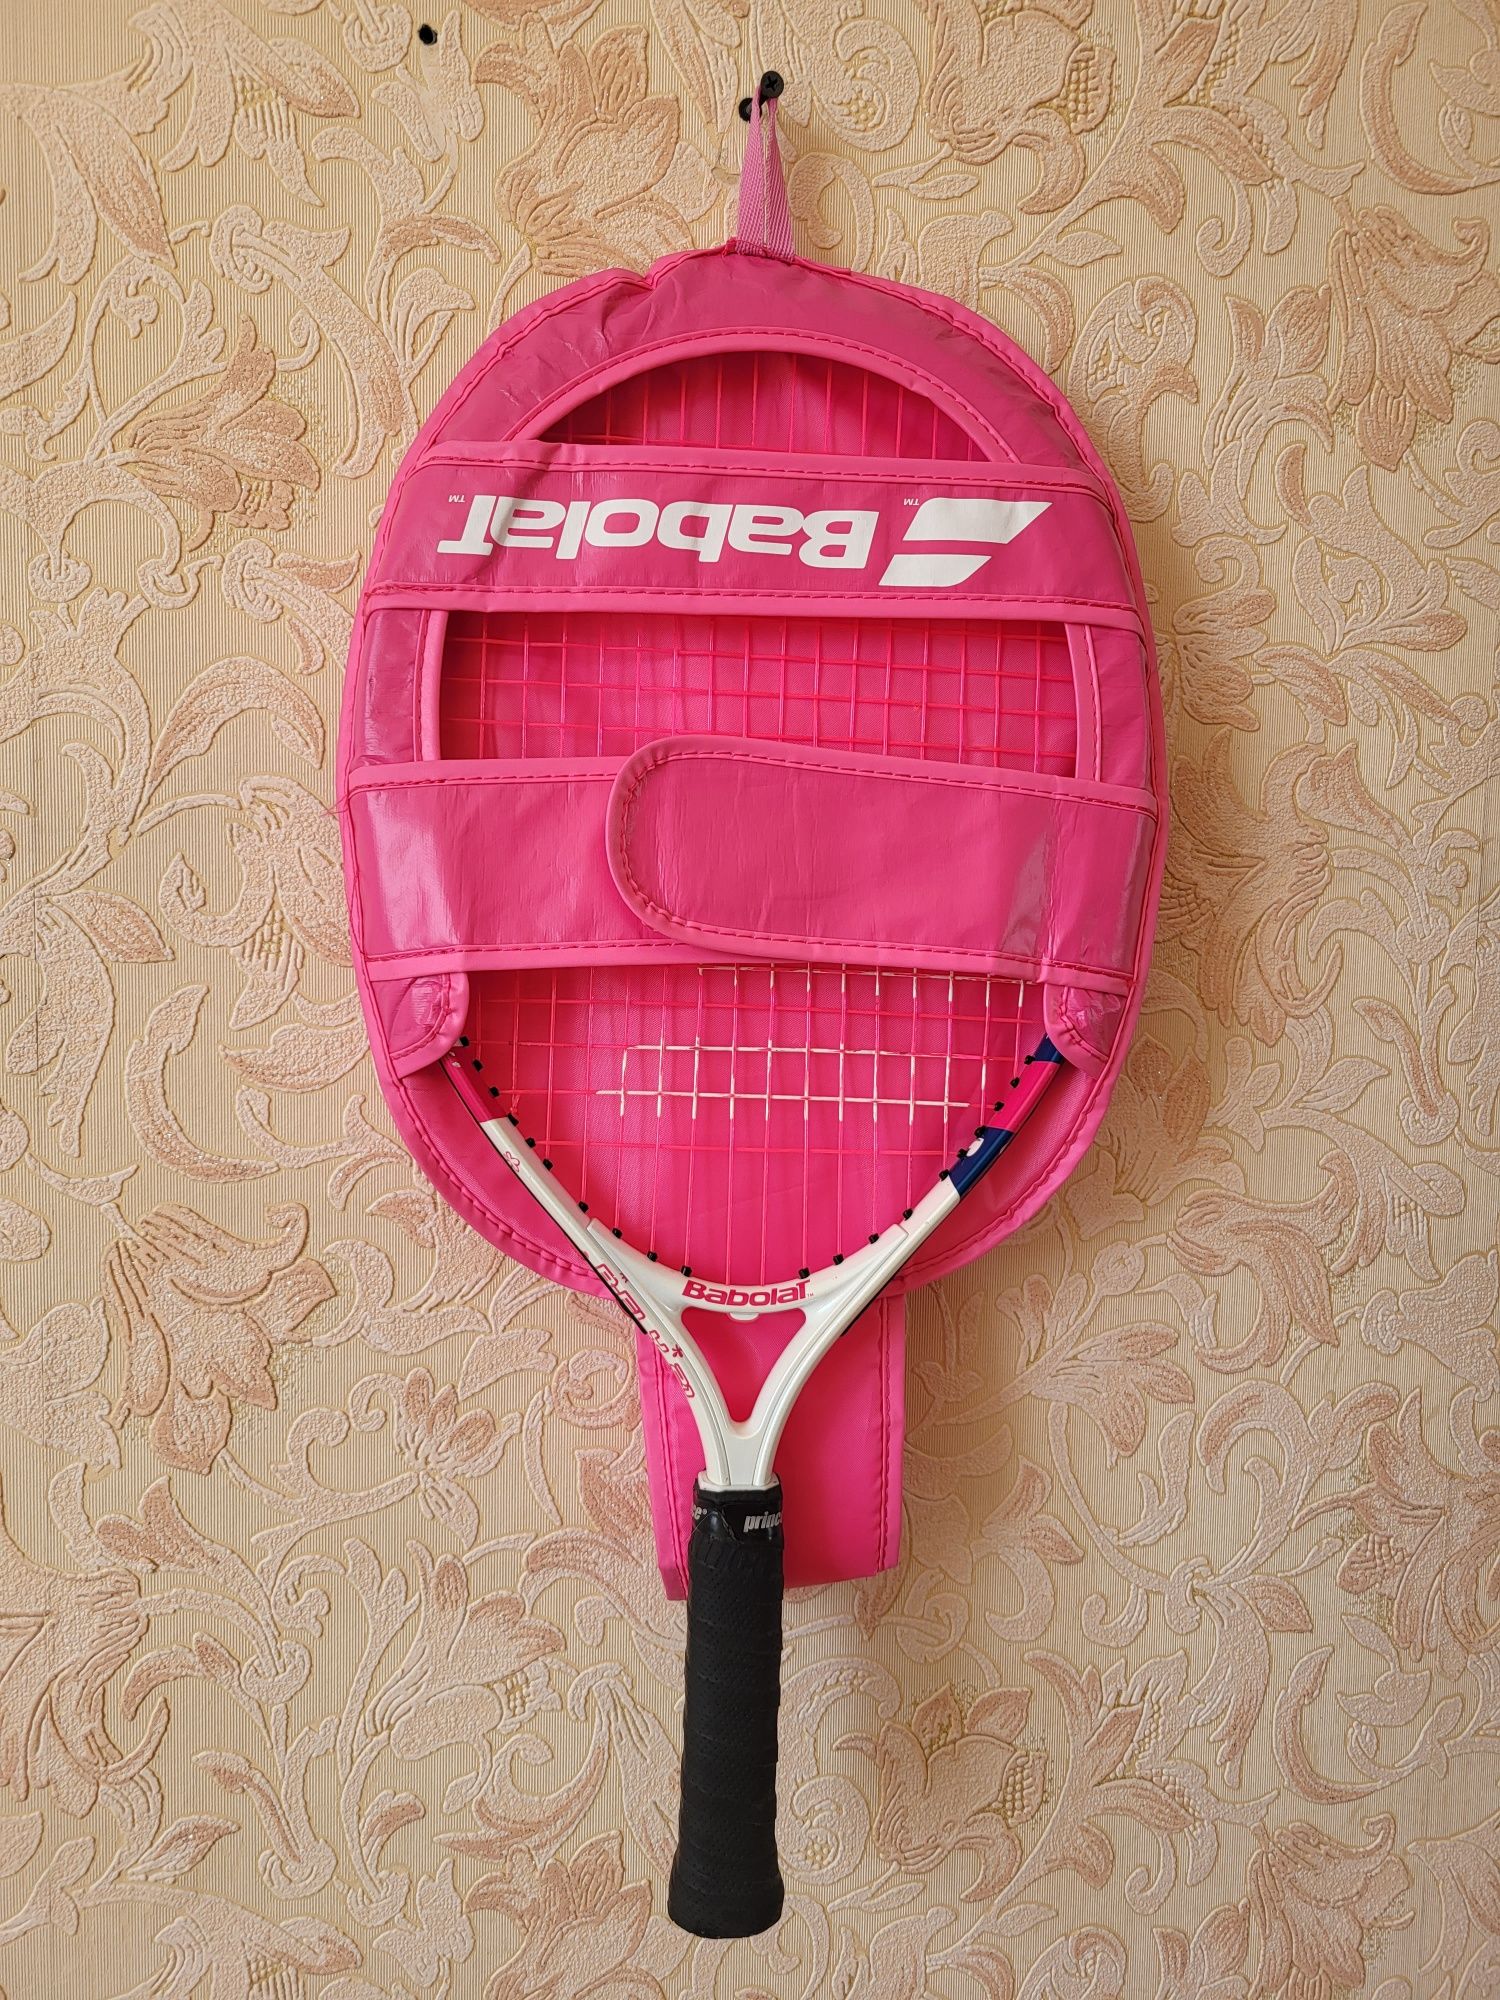 Продам ракетку для тенниса 21, для детей до 7 лет